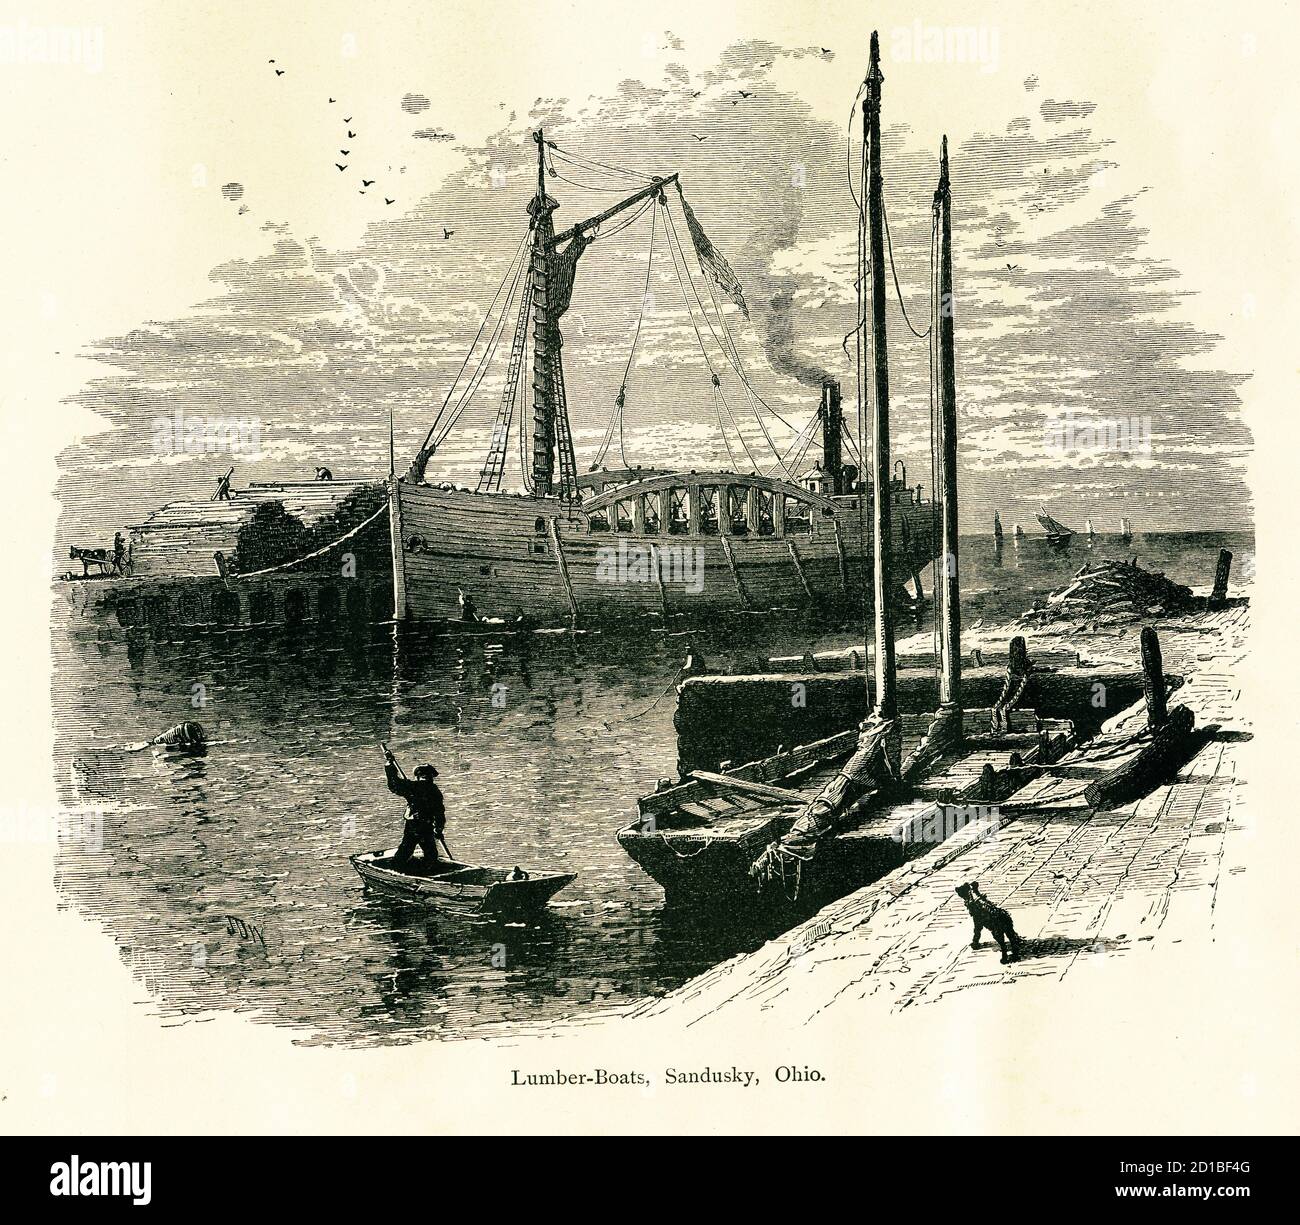 Gravure du XIXe siècle de bateaux de bois d'oeuvre sur la côte de Sandusky, Ohio, gravure en bois (1872). Illustration publiée en Amérique pittoresque ou en réseau local Banque D'Images